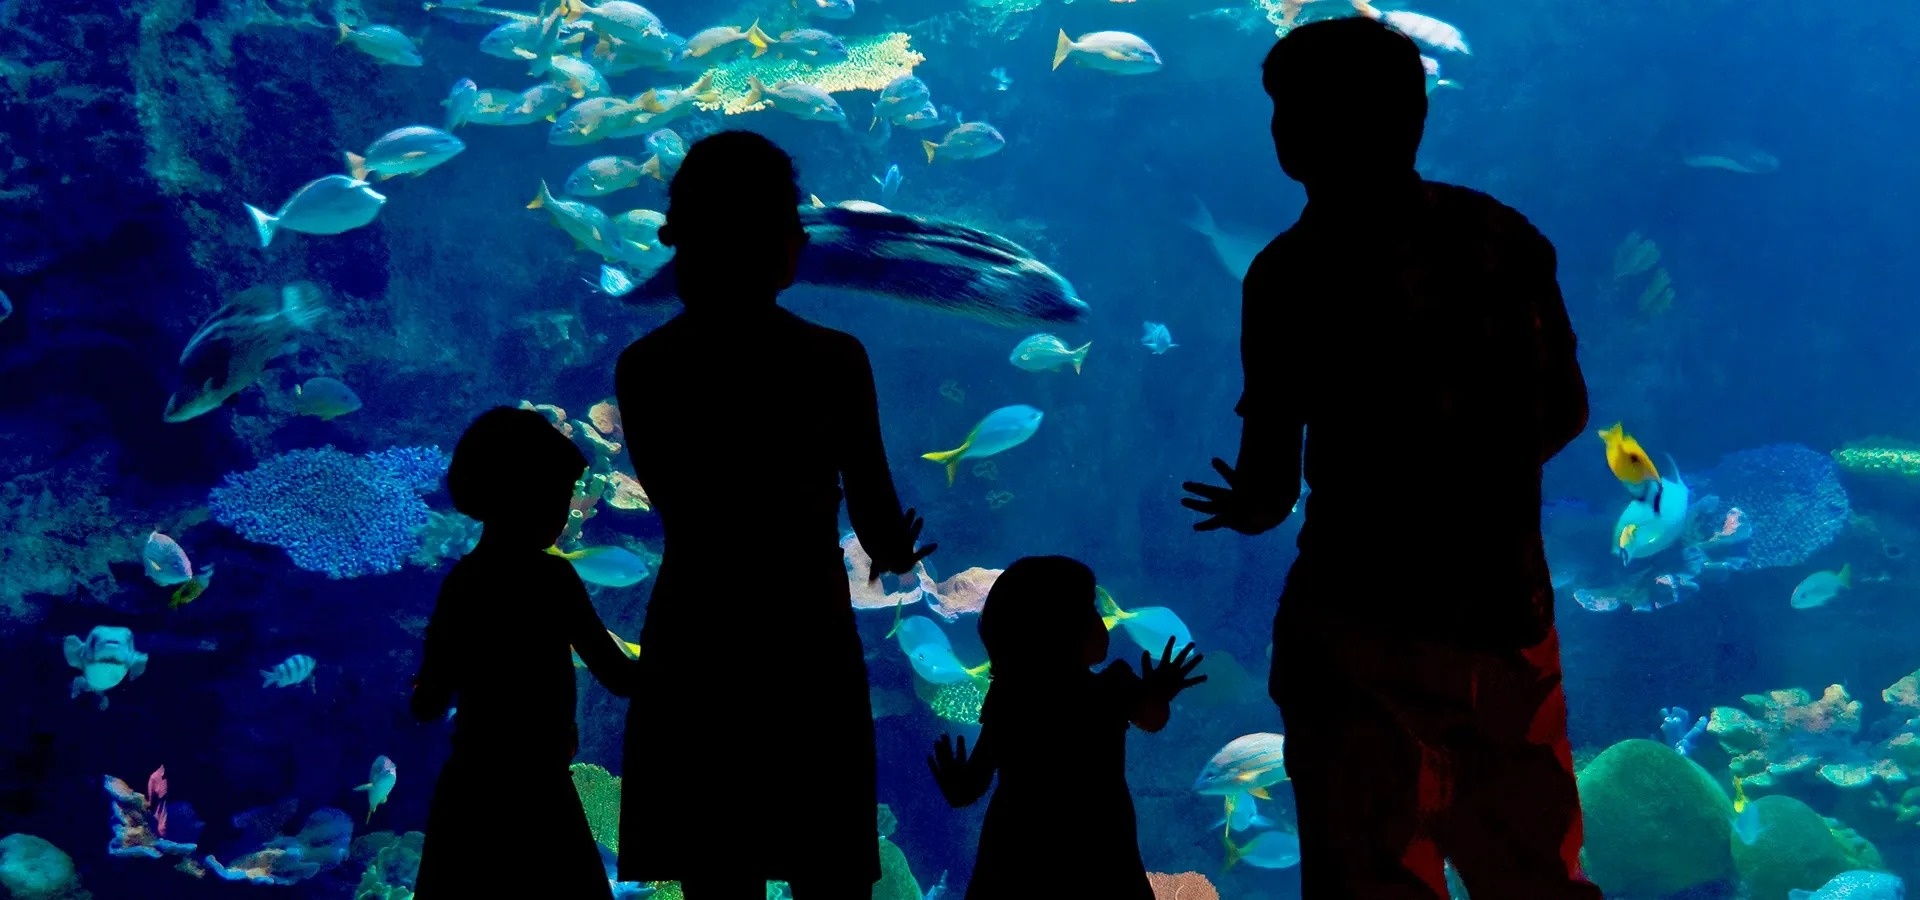 Two parents with their children at the Mazatlán Mar de Cortés Aquarium